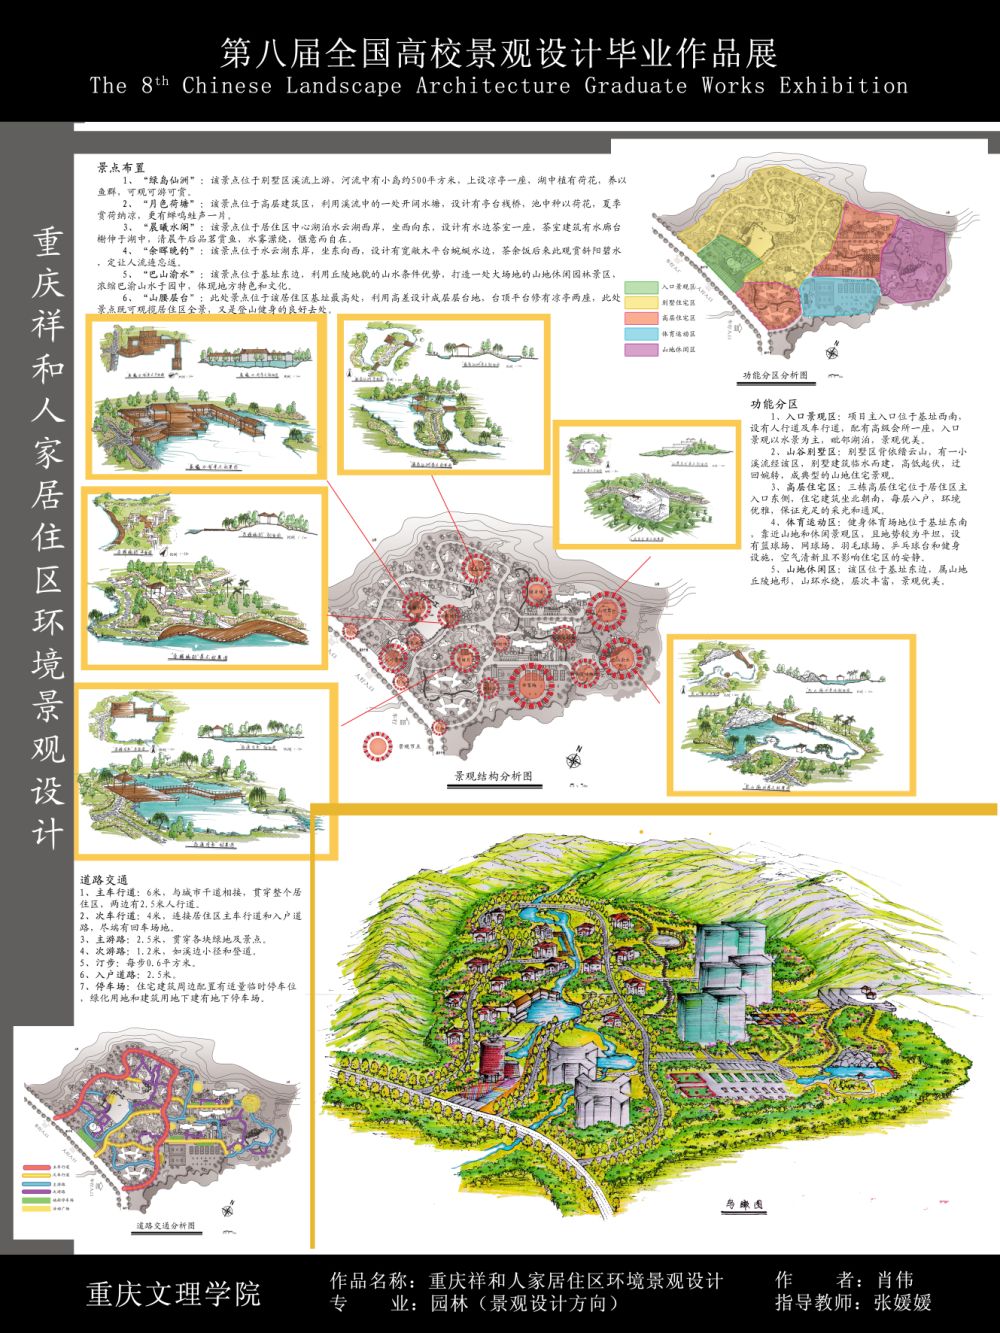 重庆祥和人家居住区环境景观设计-2